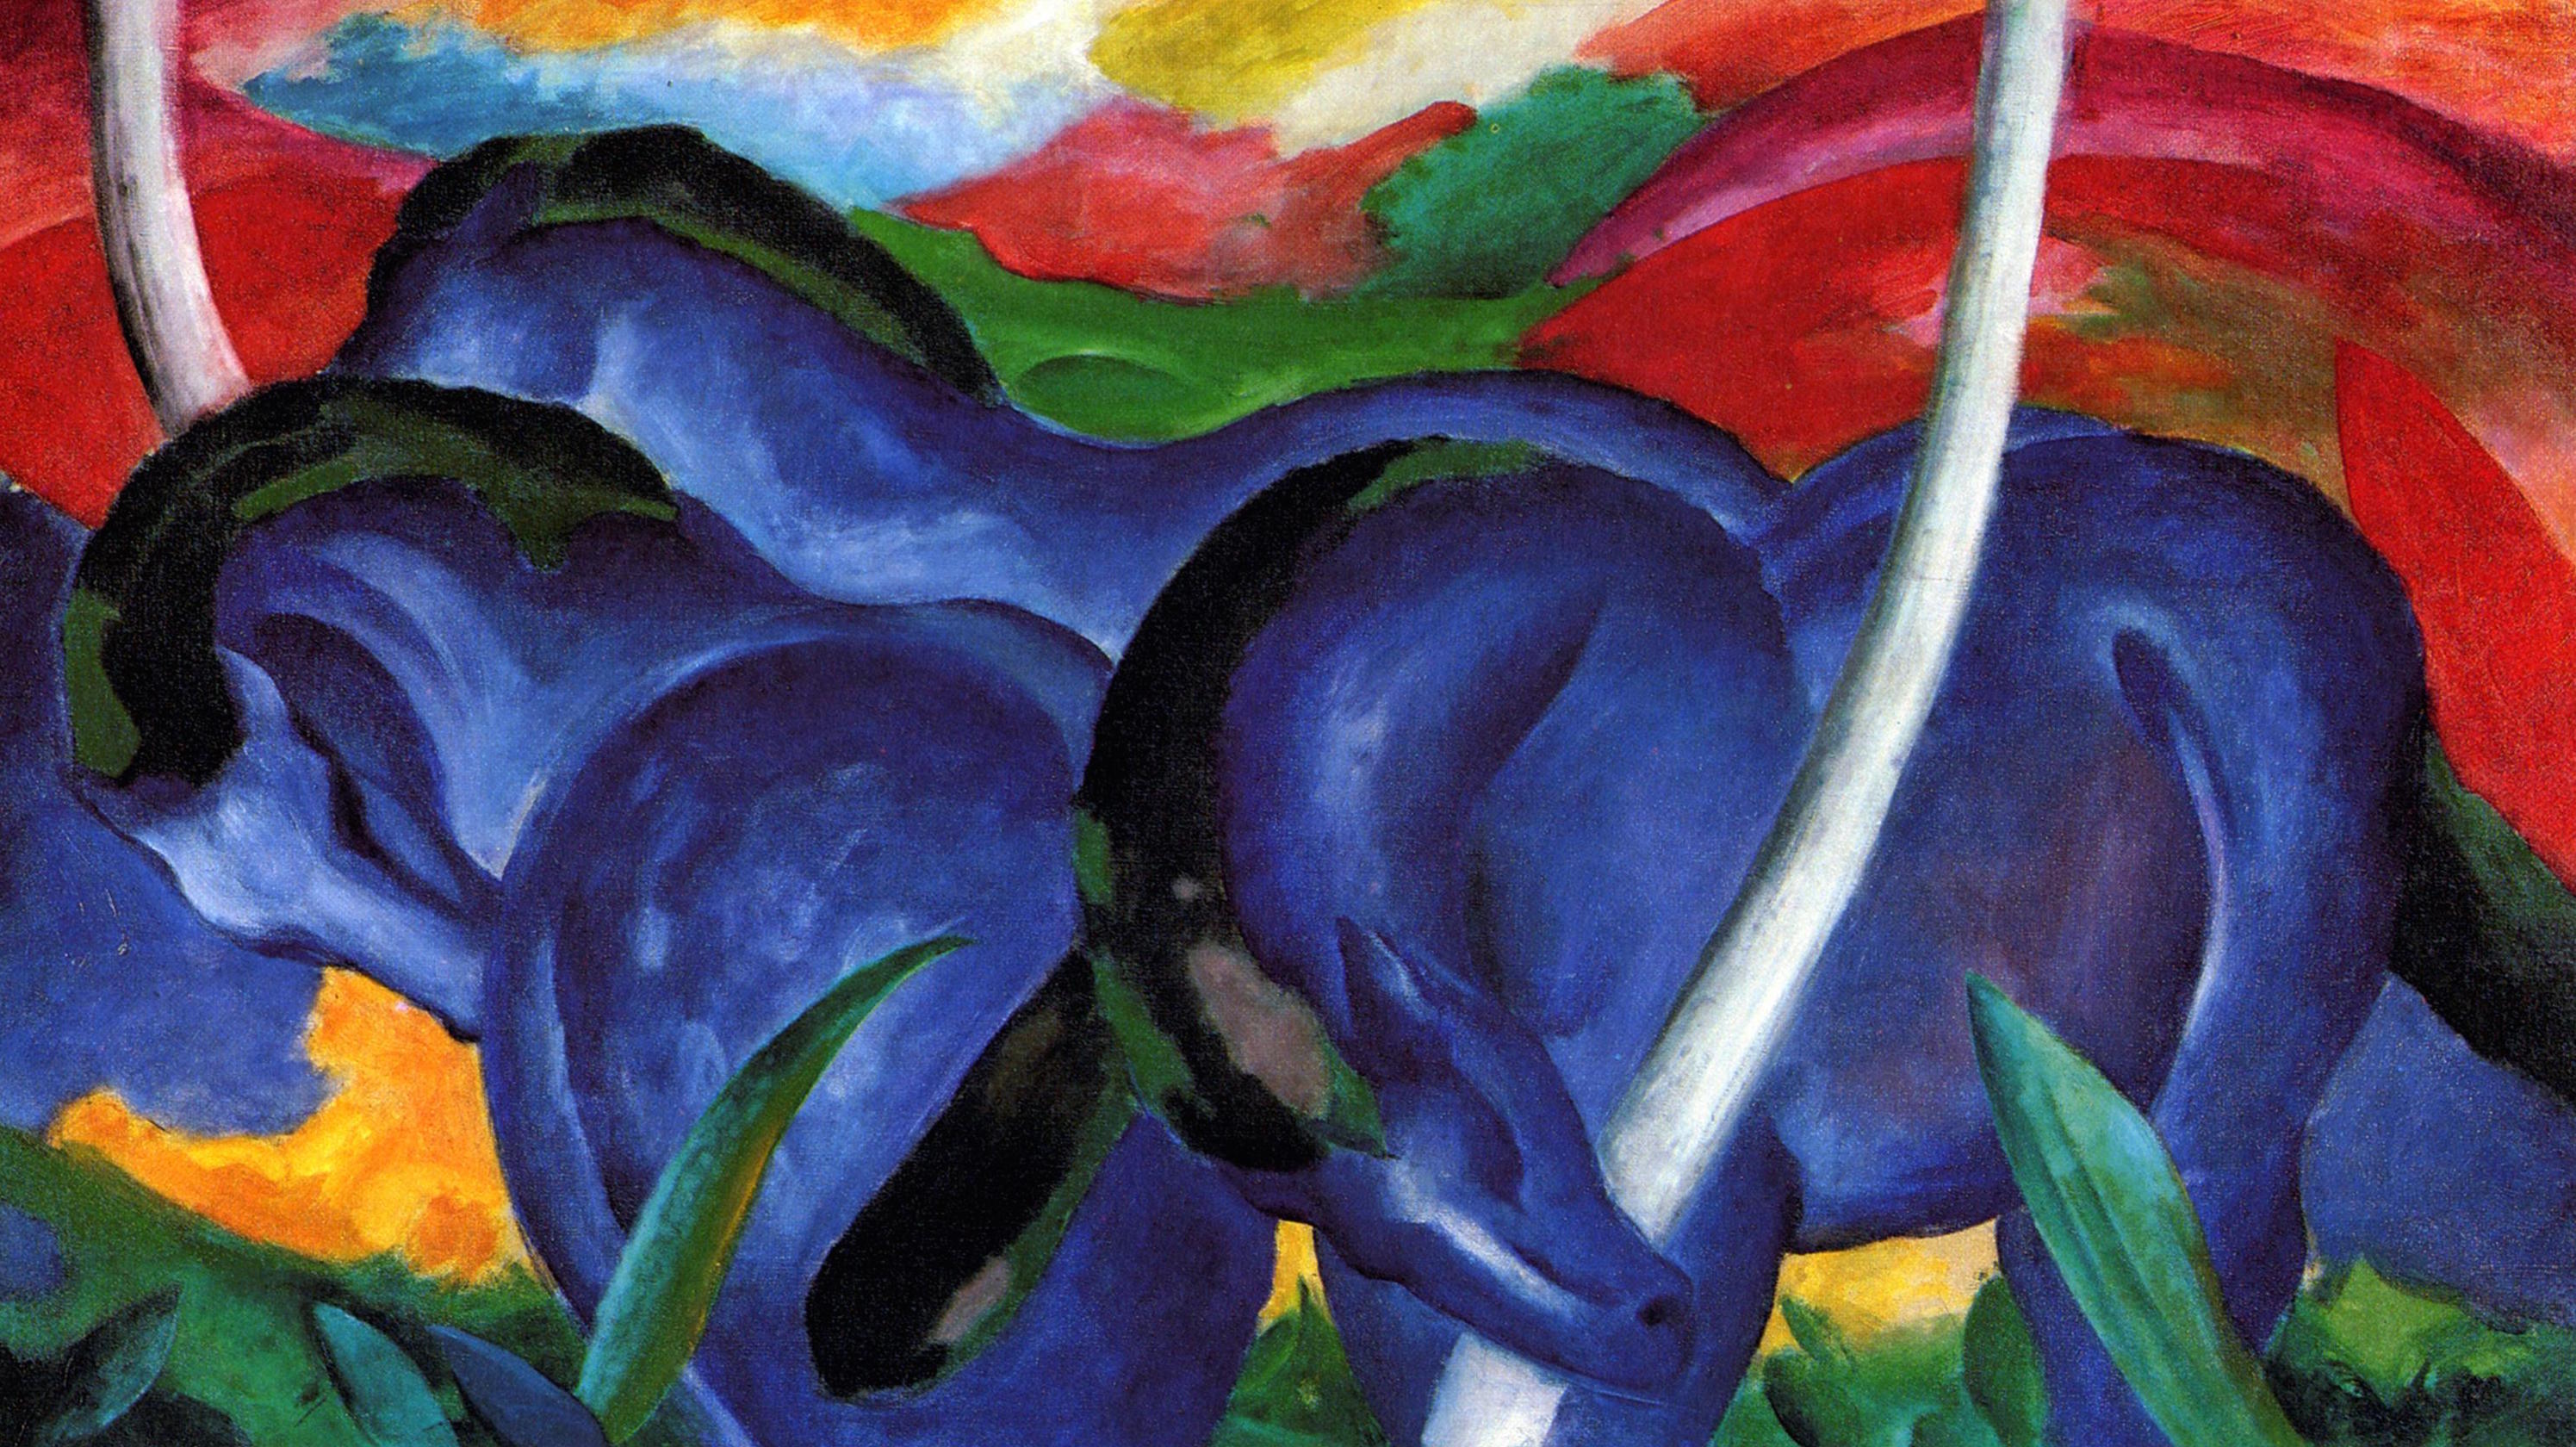 大きな青い馬 by Franz Marc - 1911年 - 41.625インチ x 71.3125インチ 